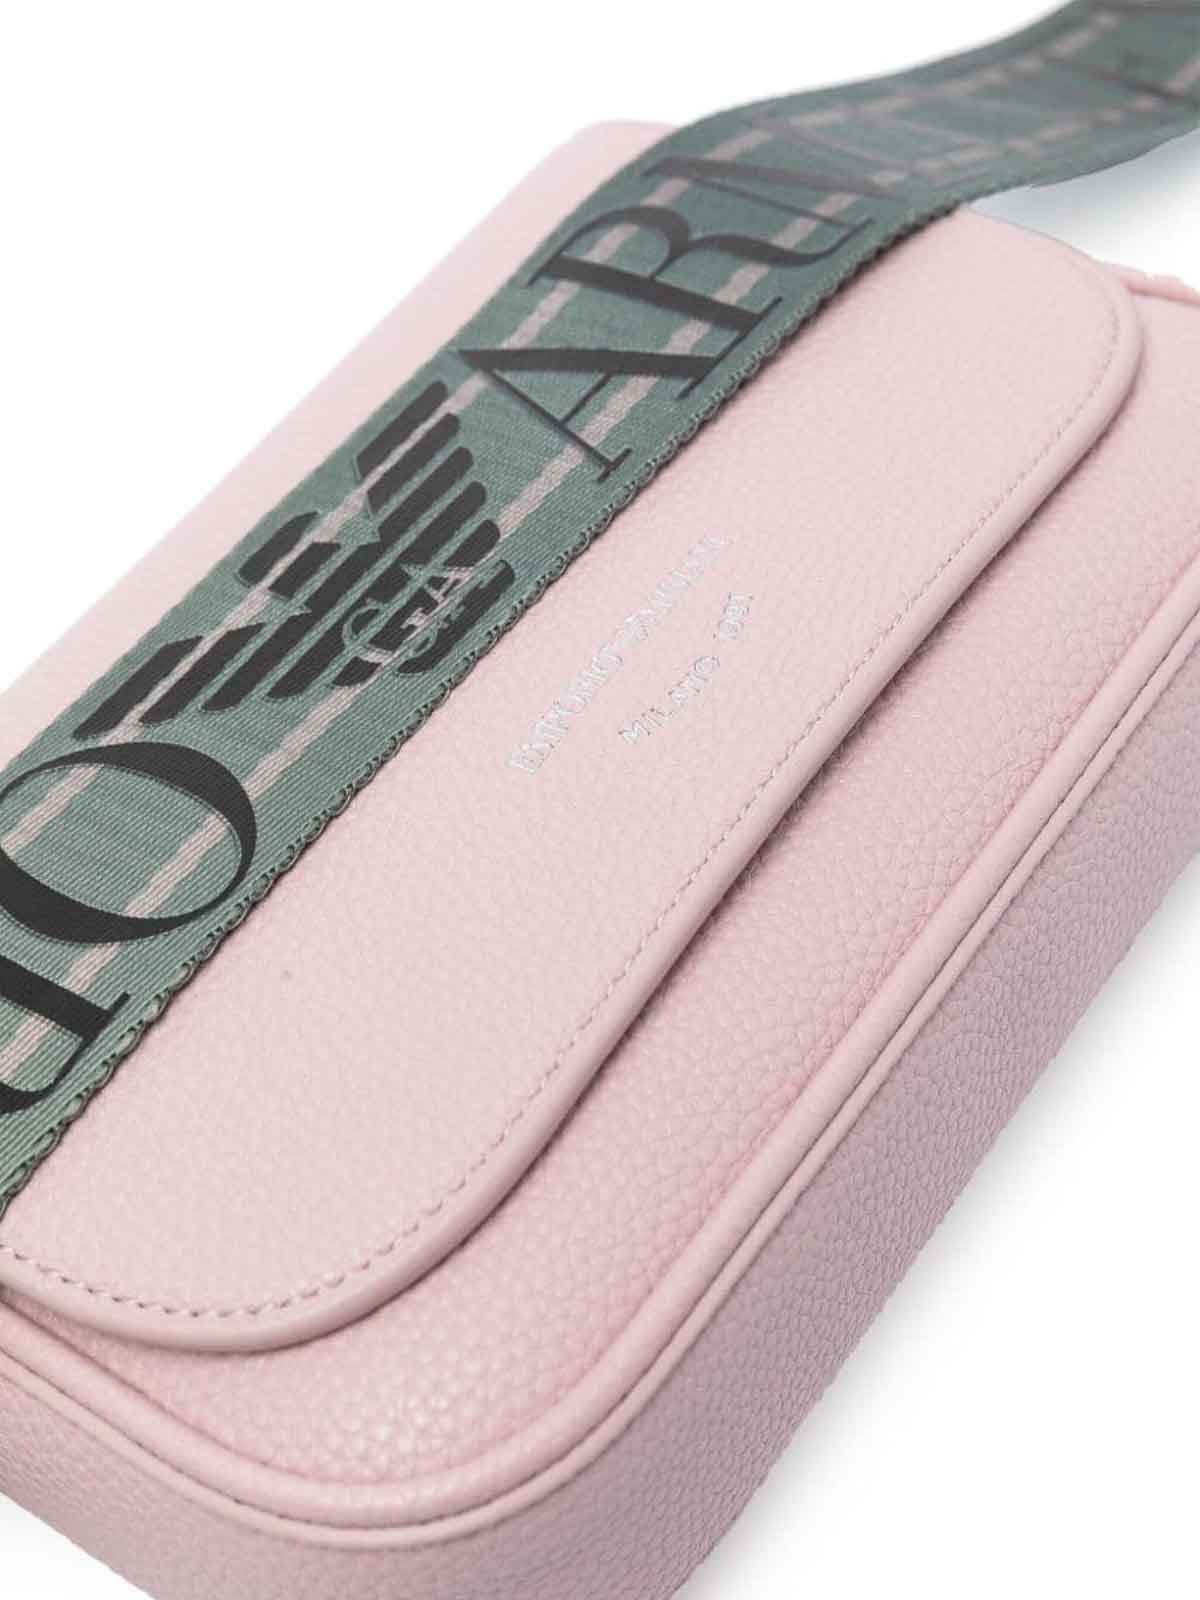 Shop Emporio Armani Crossbody Bag In Pink